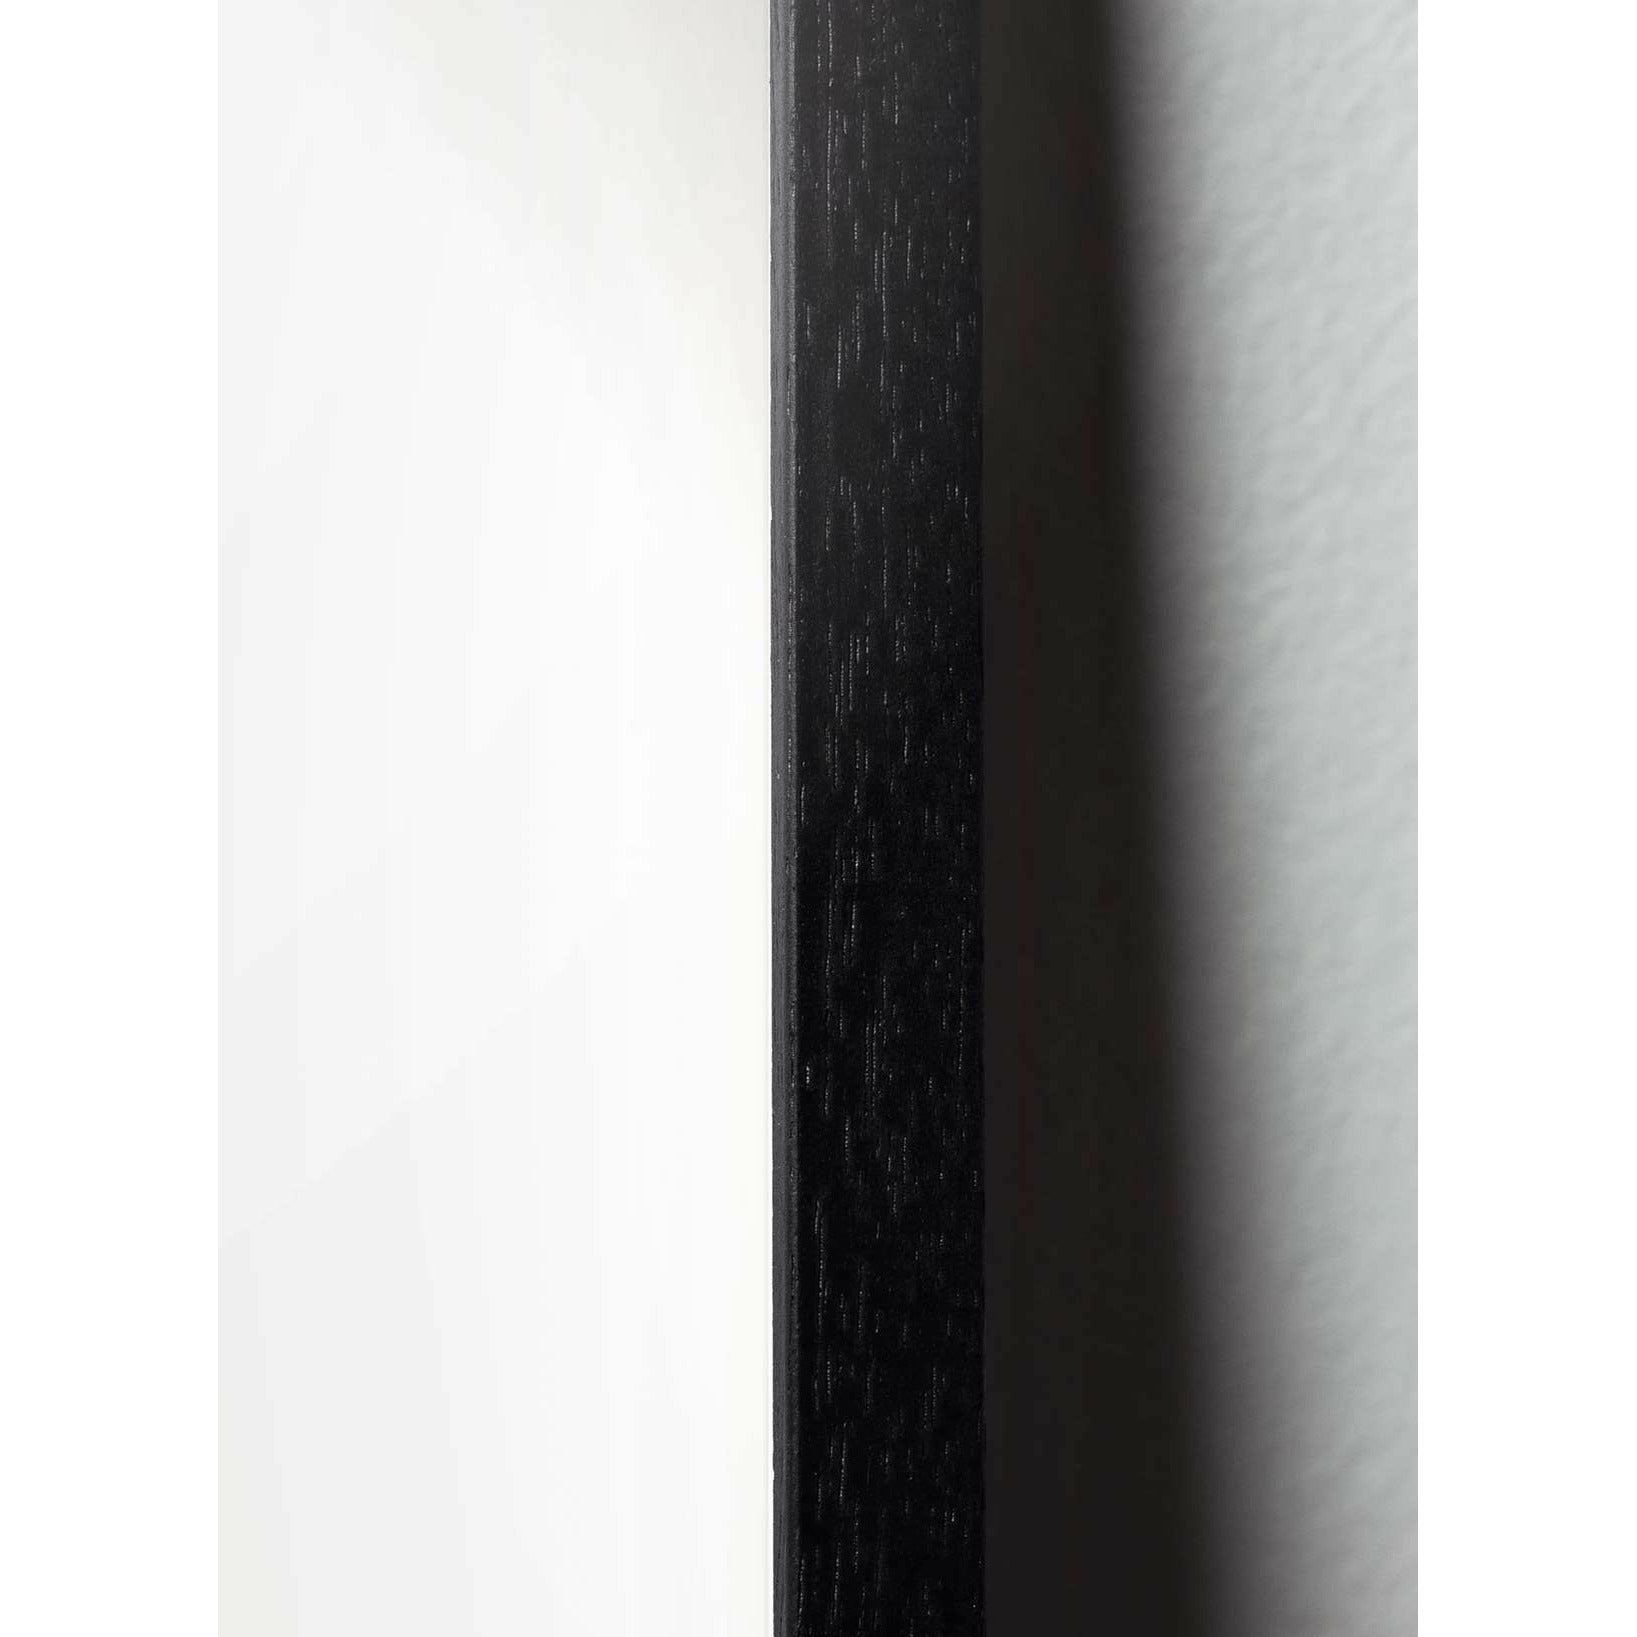 Brainchild Myrslag affisch, ram i svart -målat trä 30x40 cm, vit bakgrund